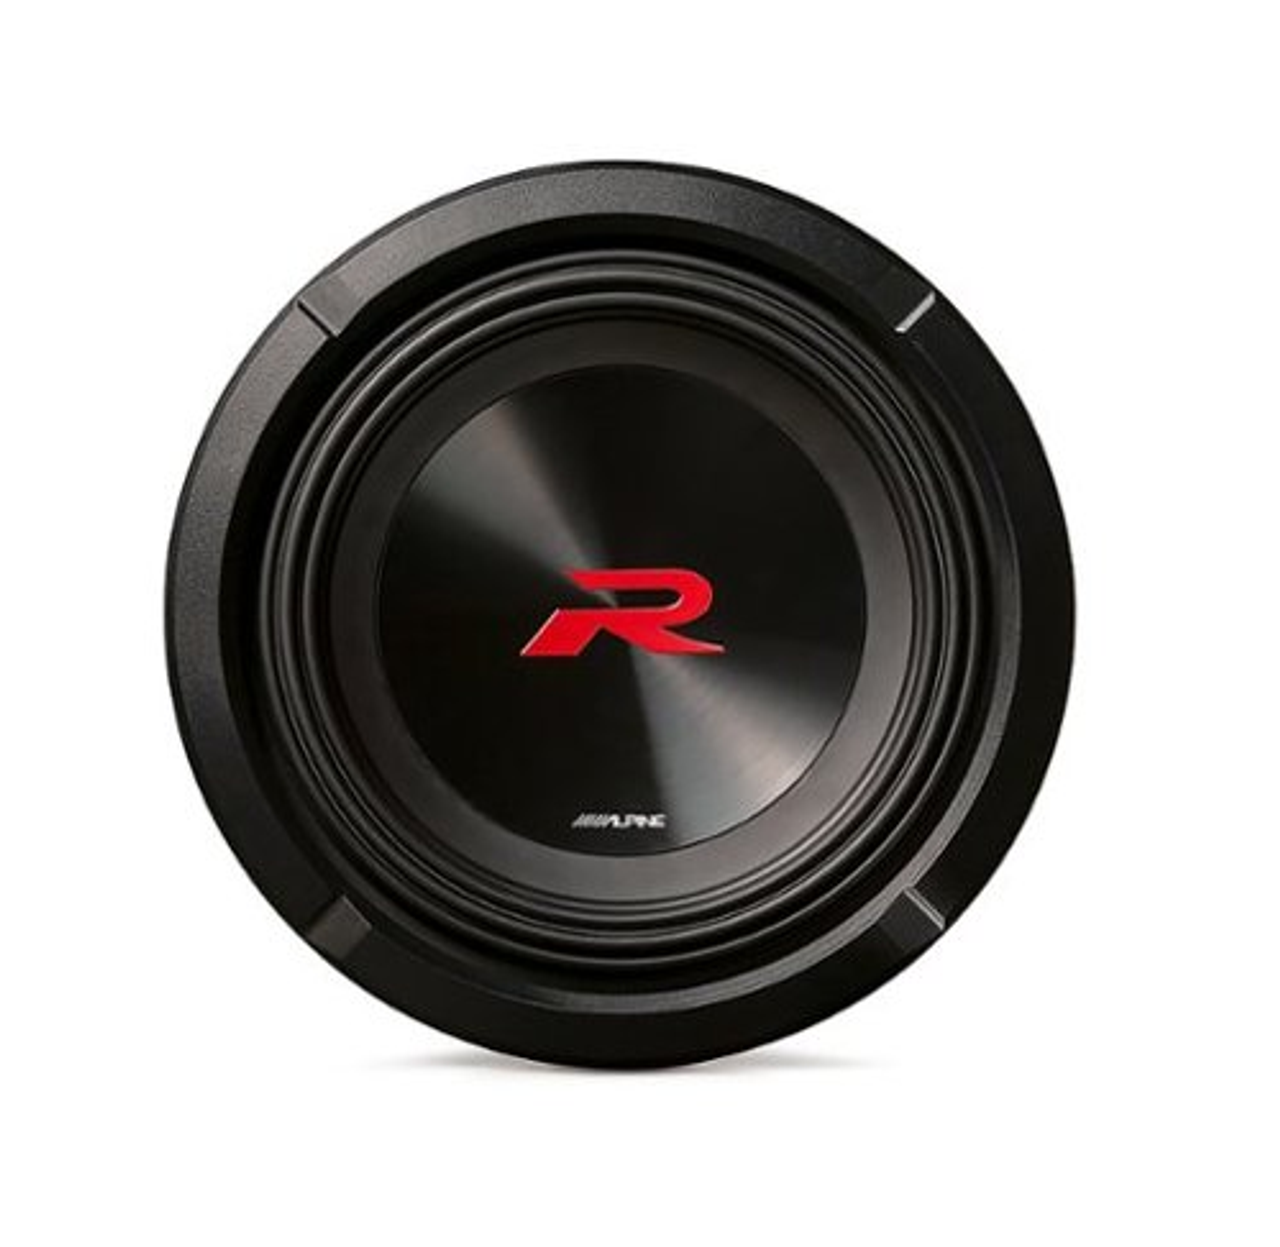 Alpine - R-Series Dual 8" Voice Coil 4-Ohm Subwoofer - Black